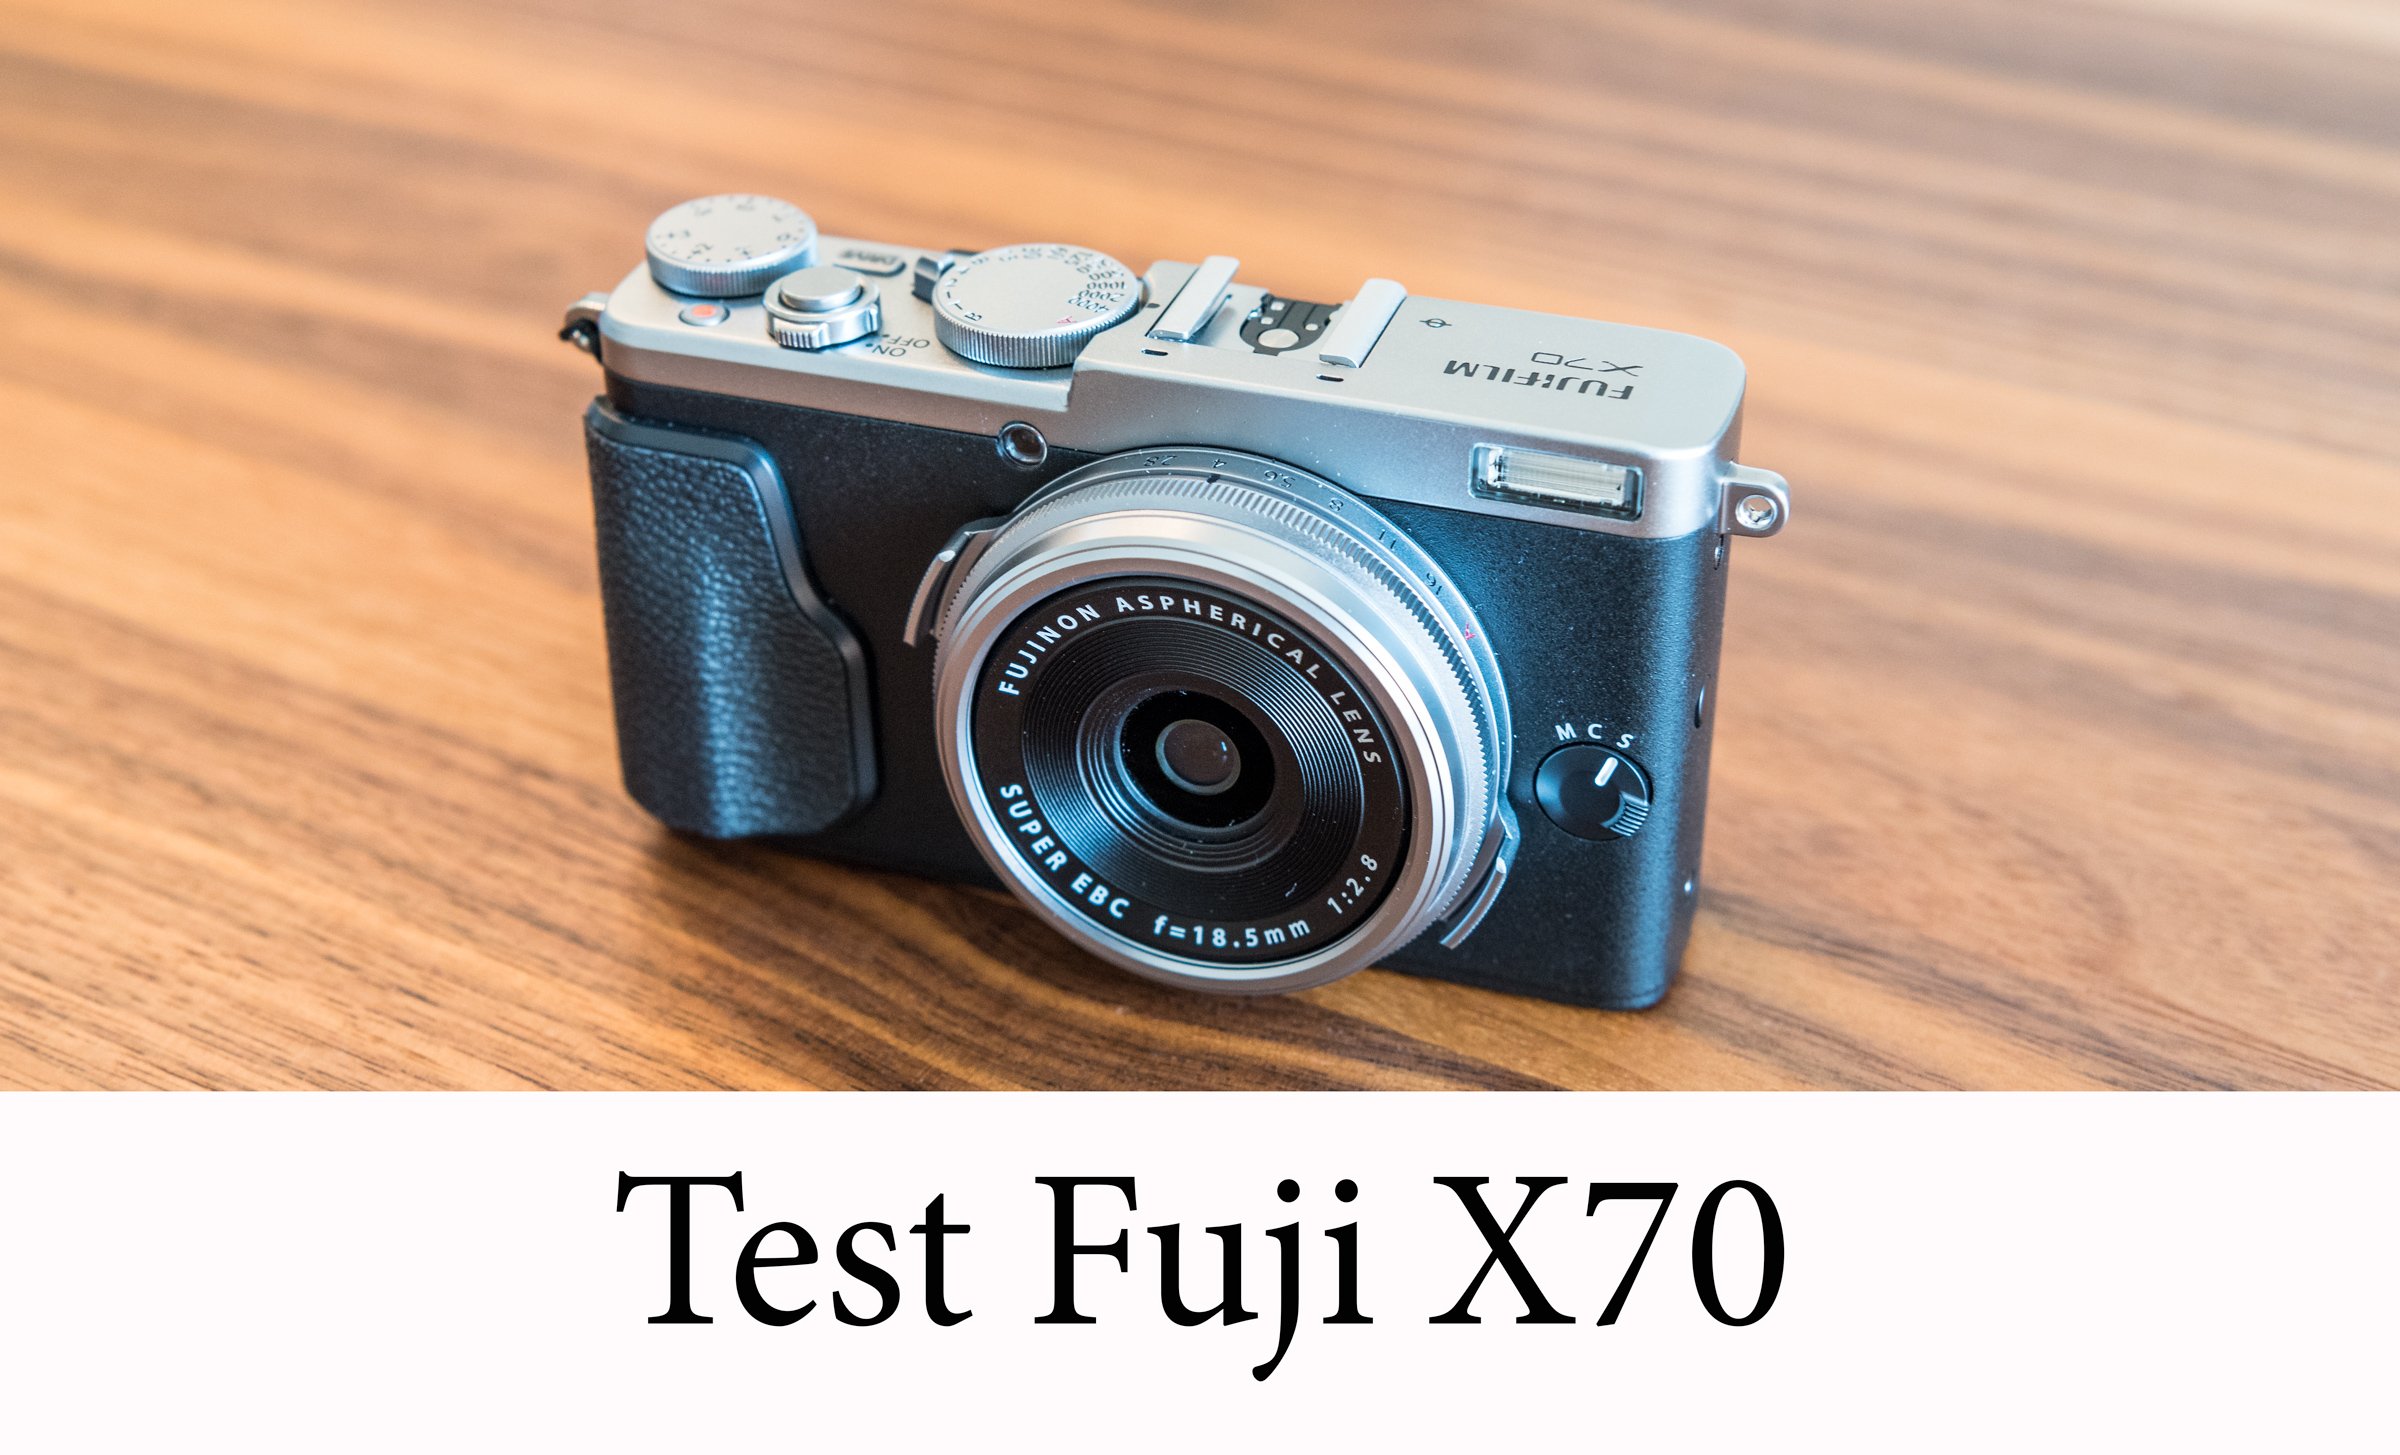 Test Fuji X70 Edel Kompakt-Kamera mit APS-C Sensor